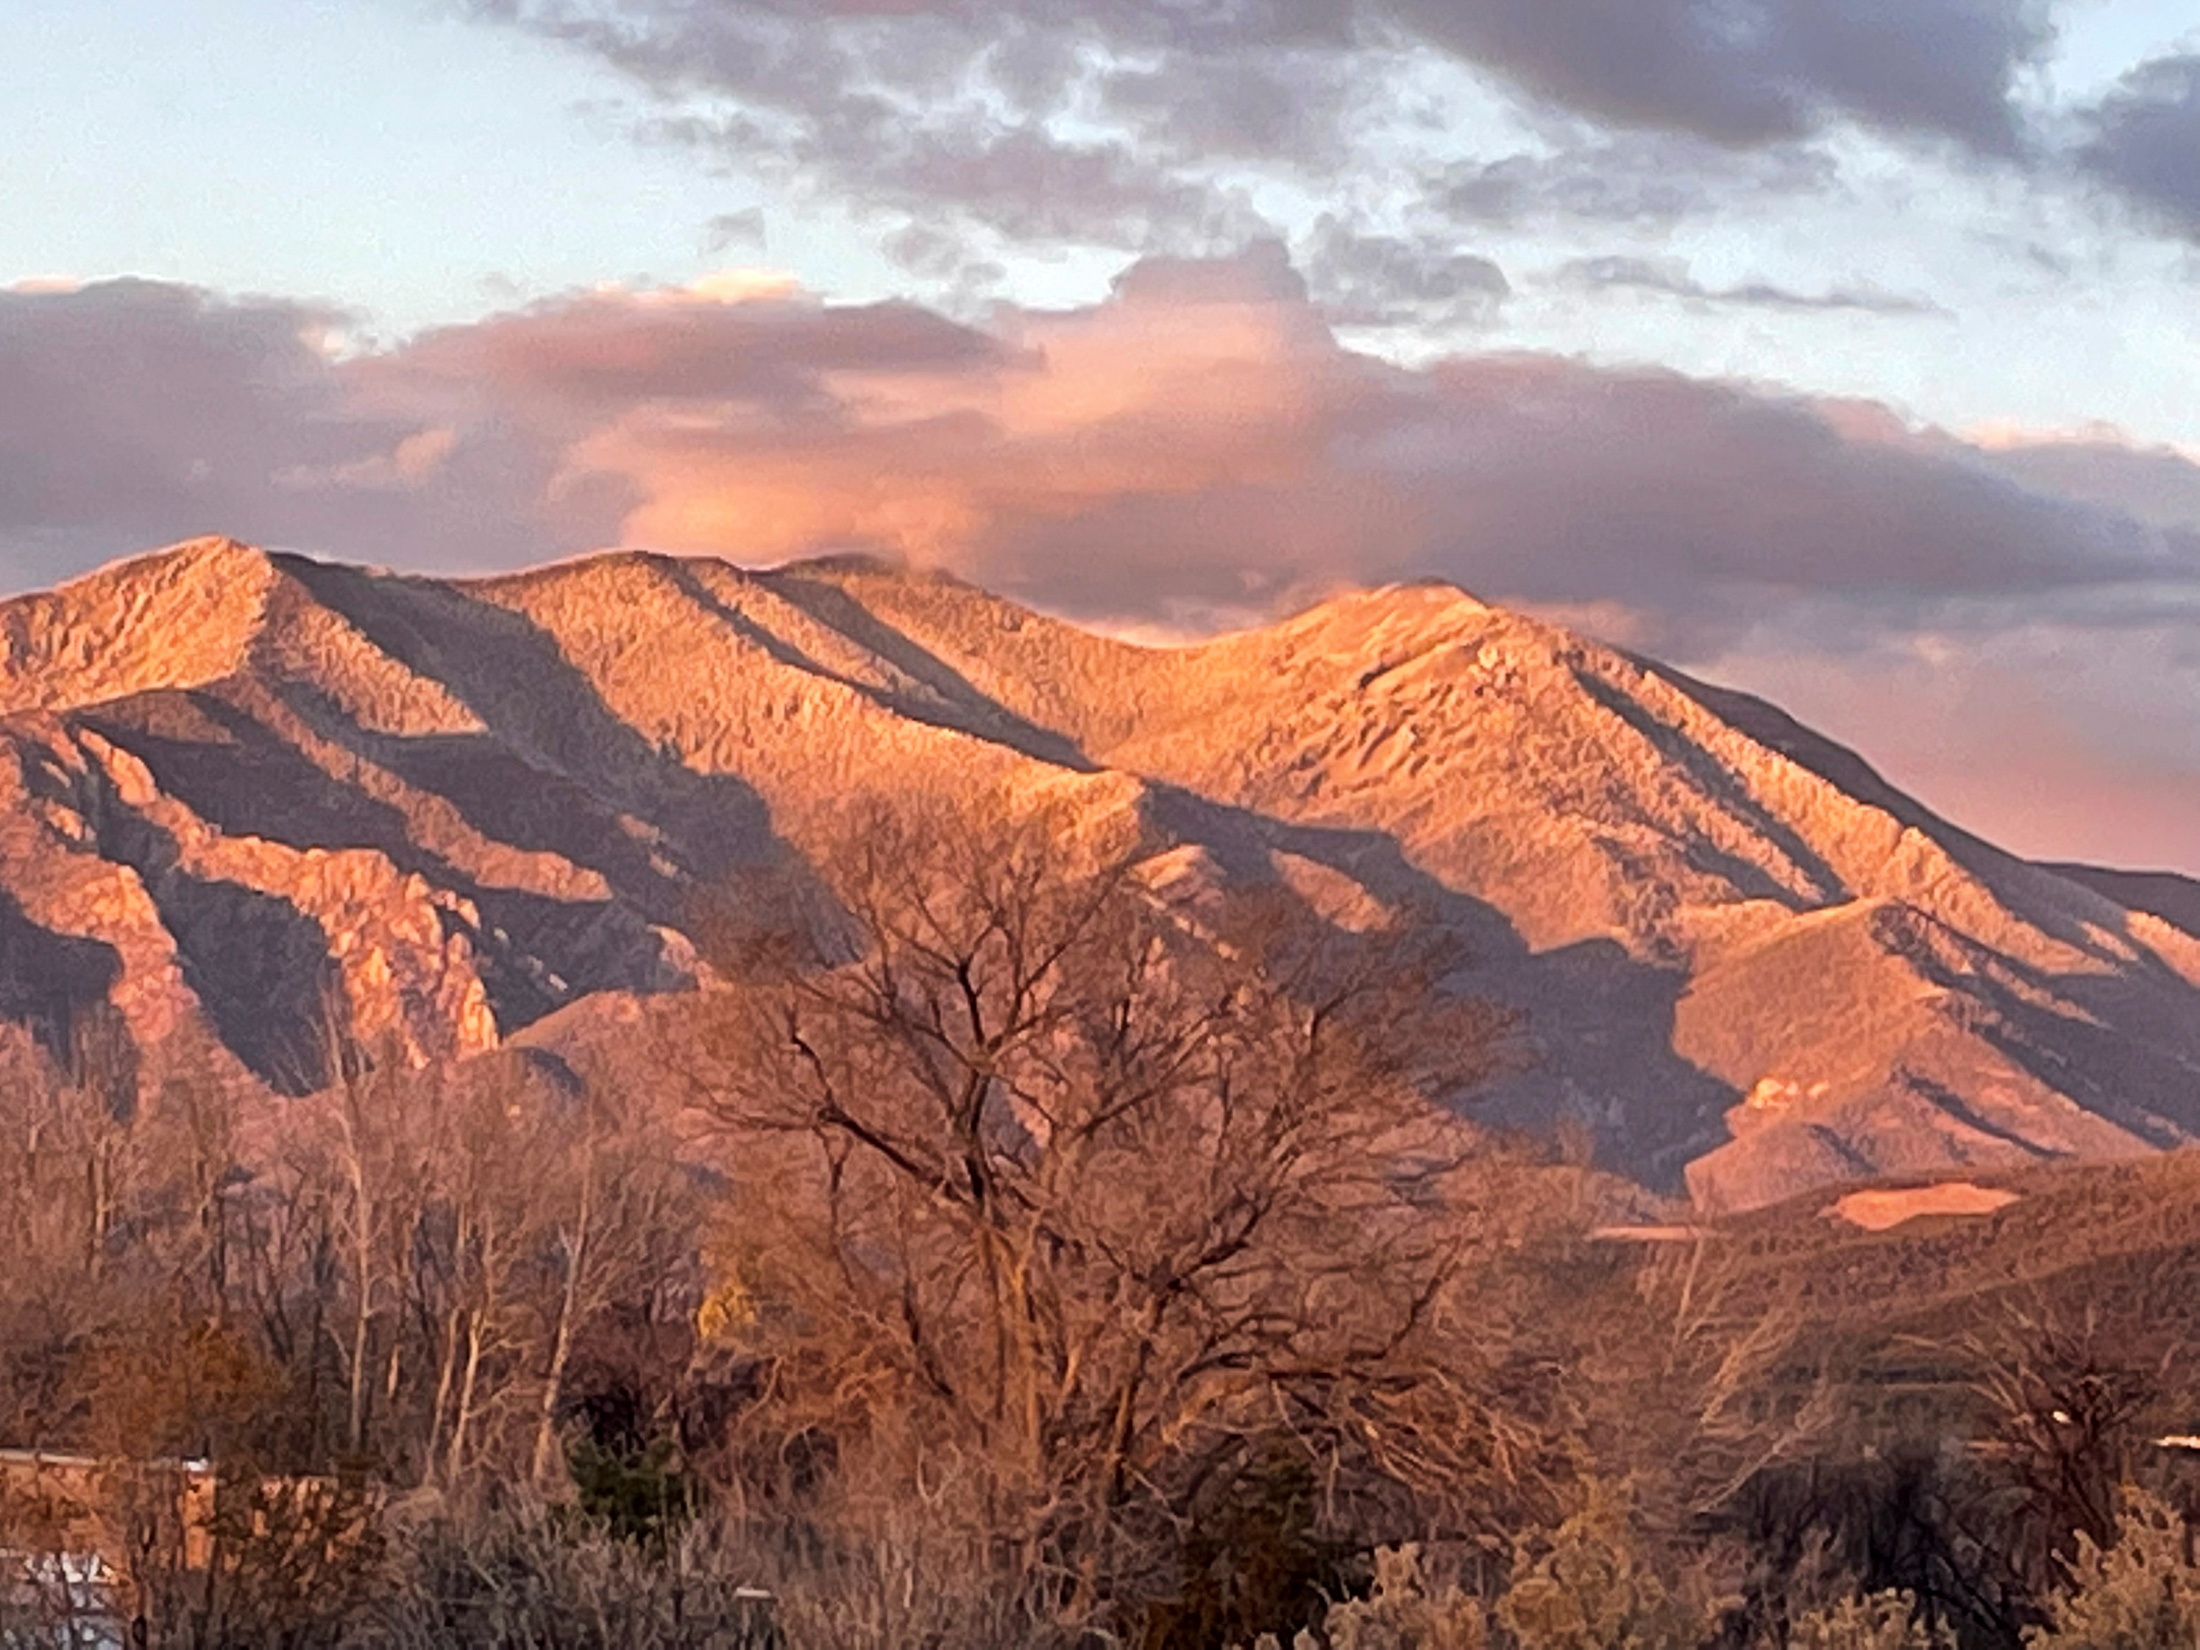 The Sangre de Cristo Mountains seen near Taos, New Mexico